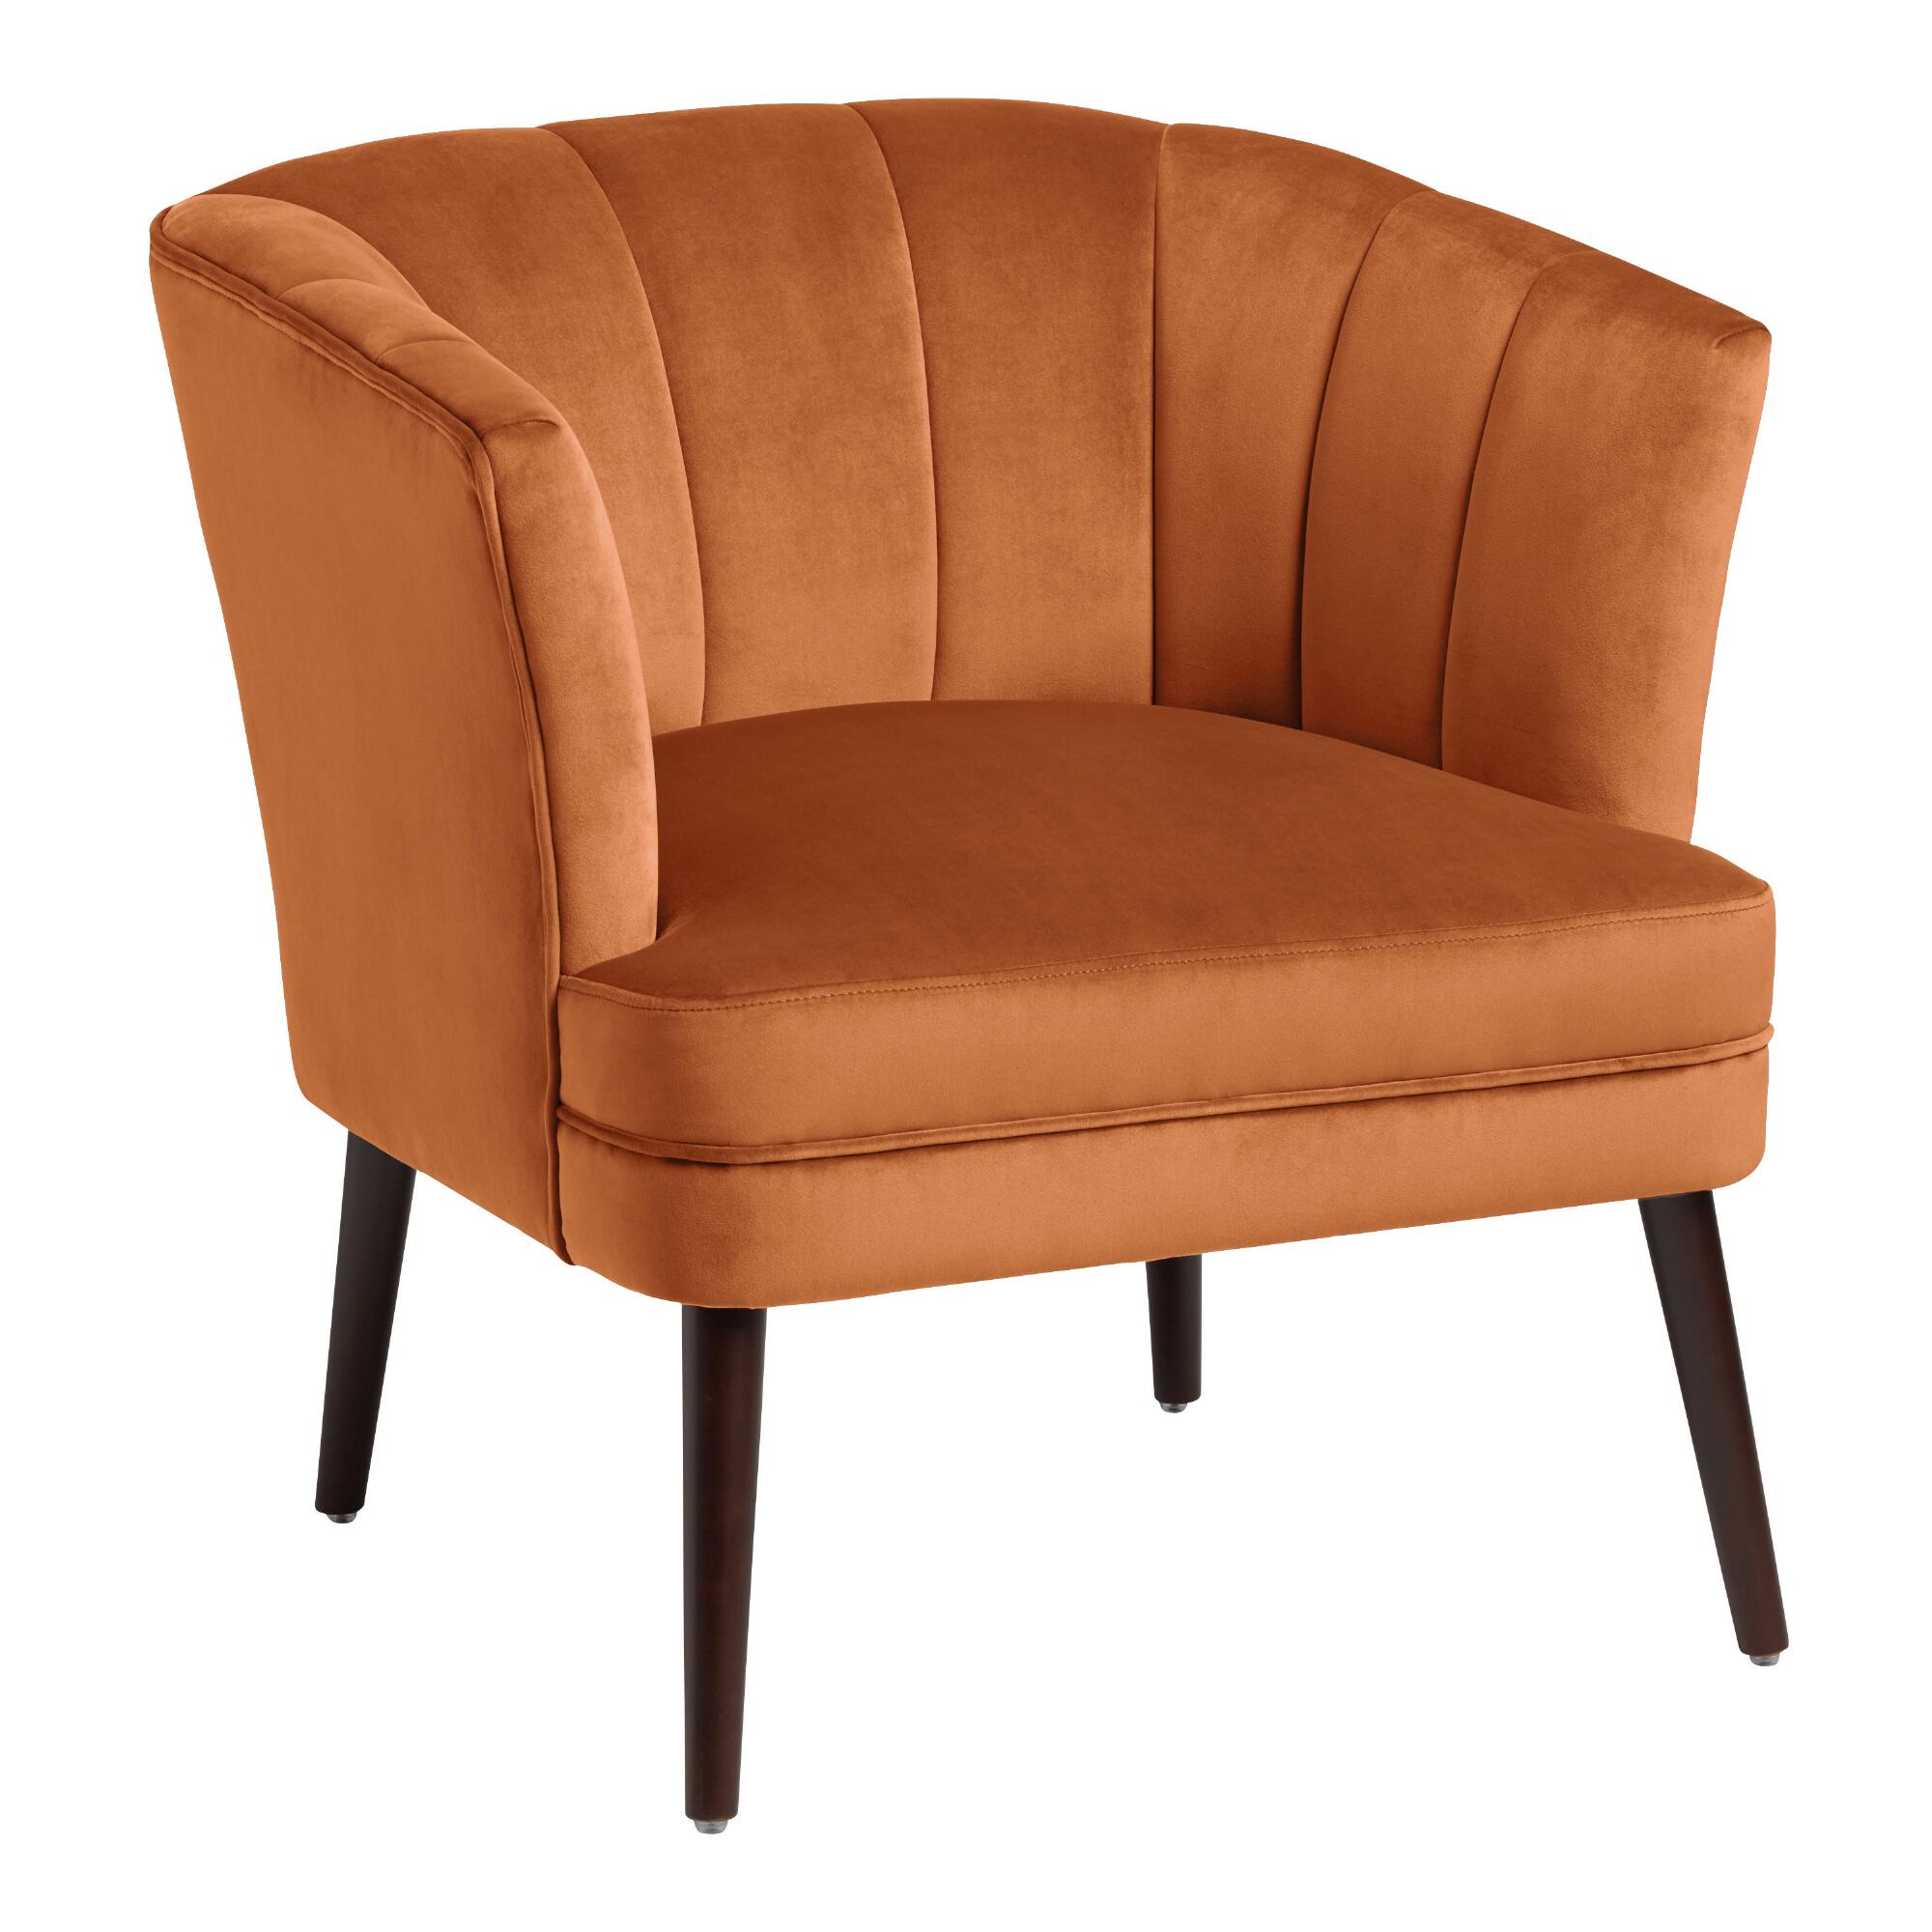 Velvet Channel Back Adalynn Upholstered Chair: Green by World Market